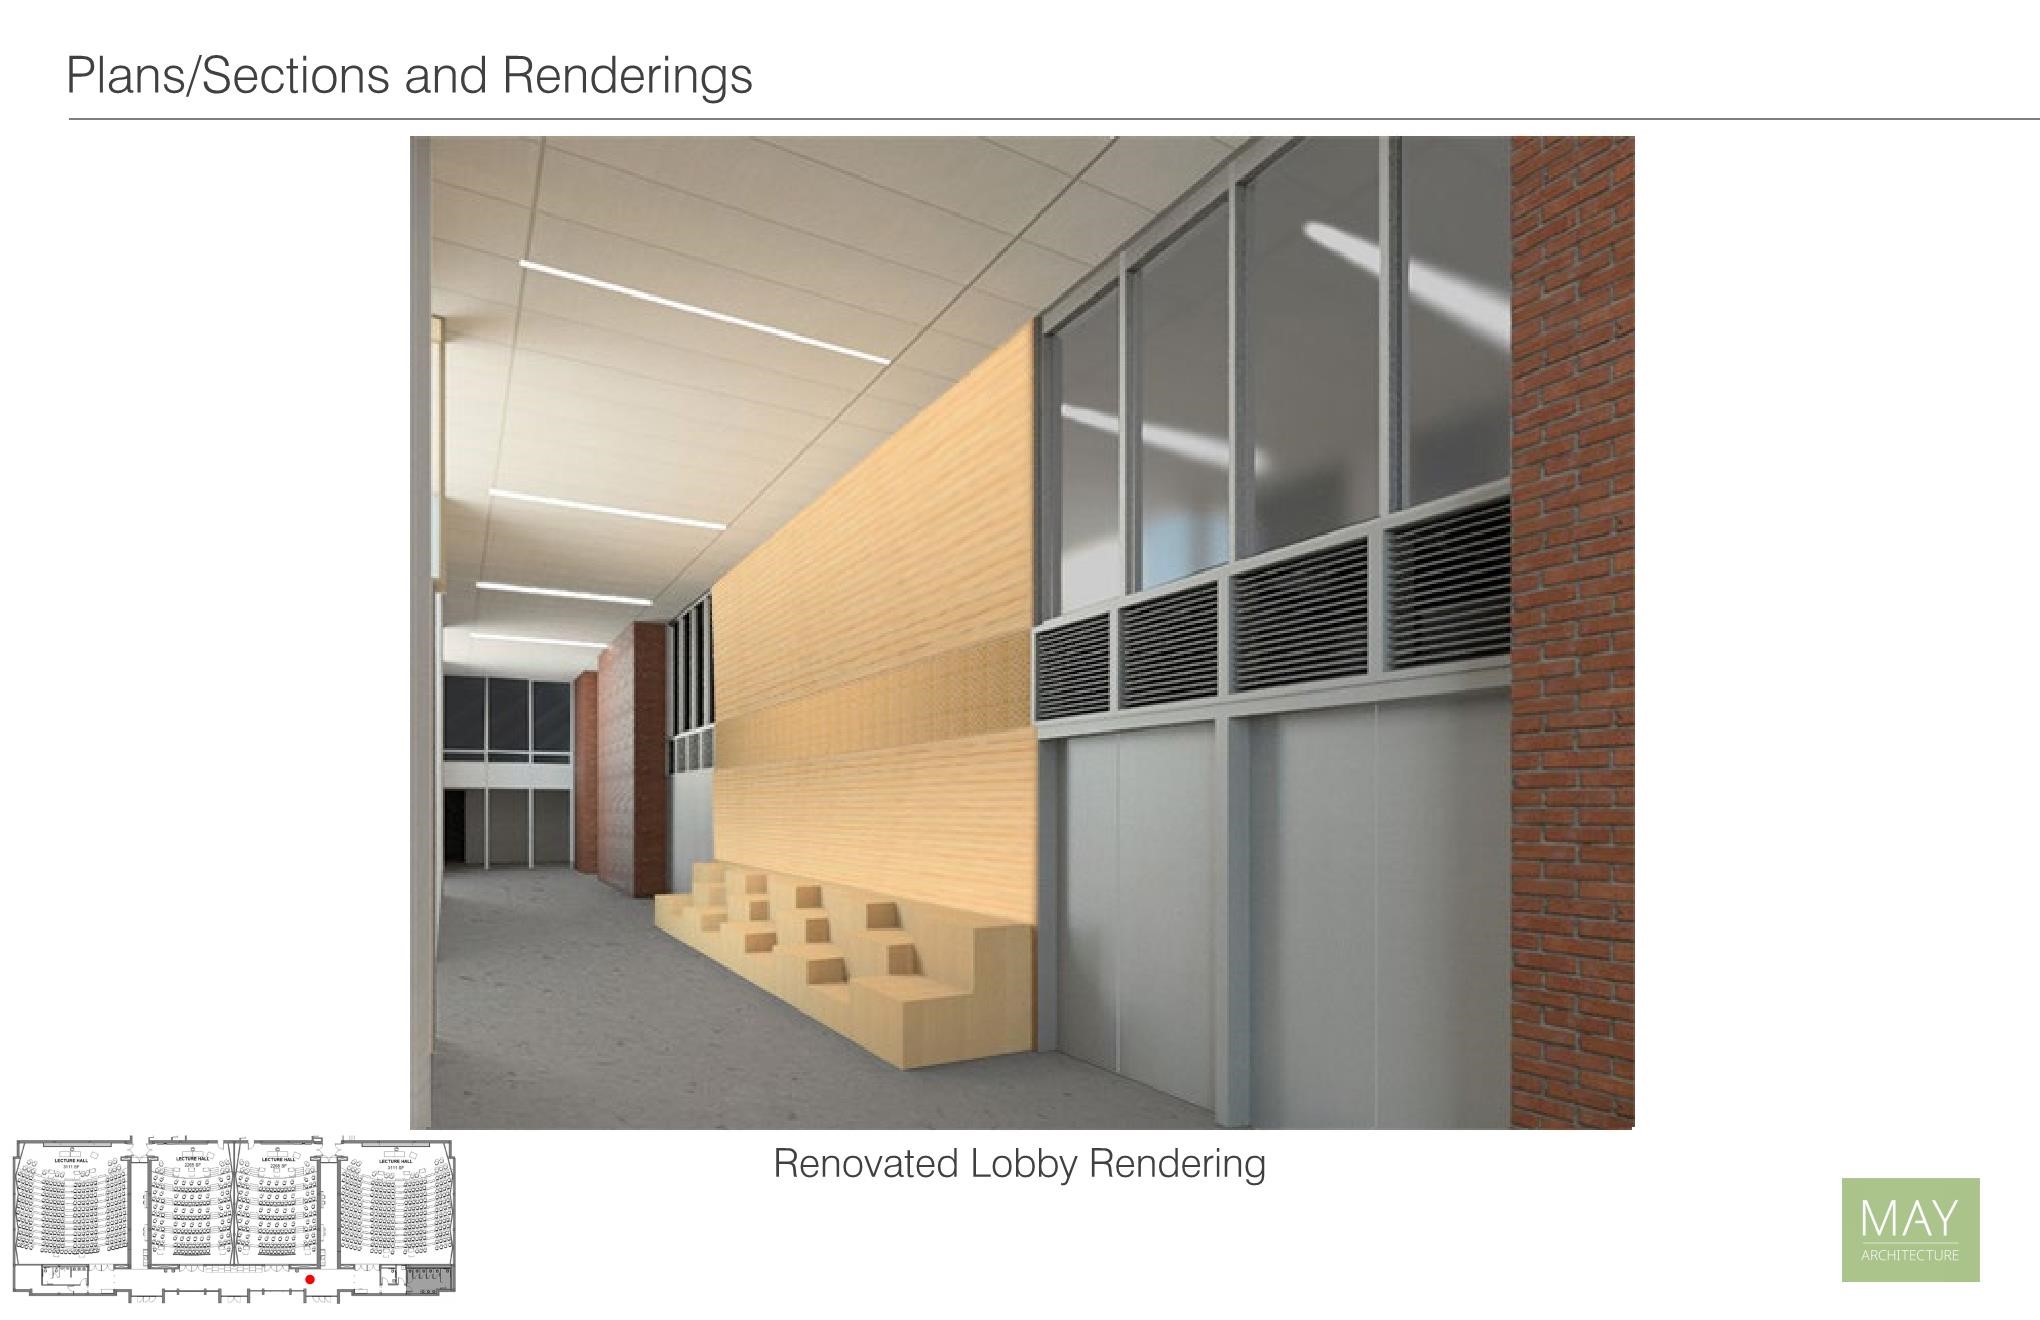 Sketch of lobby renovation